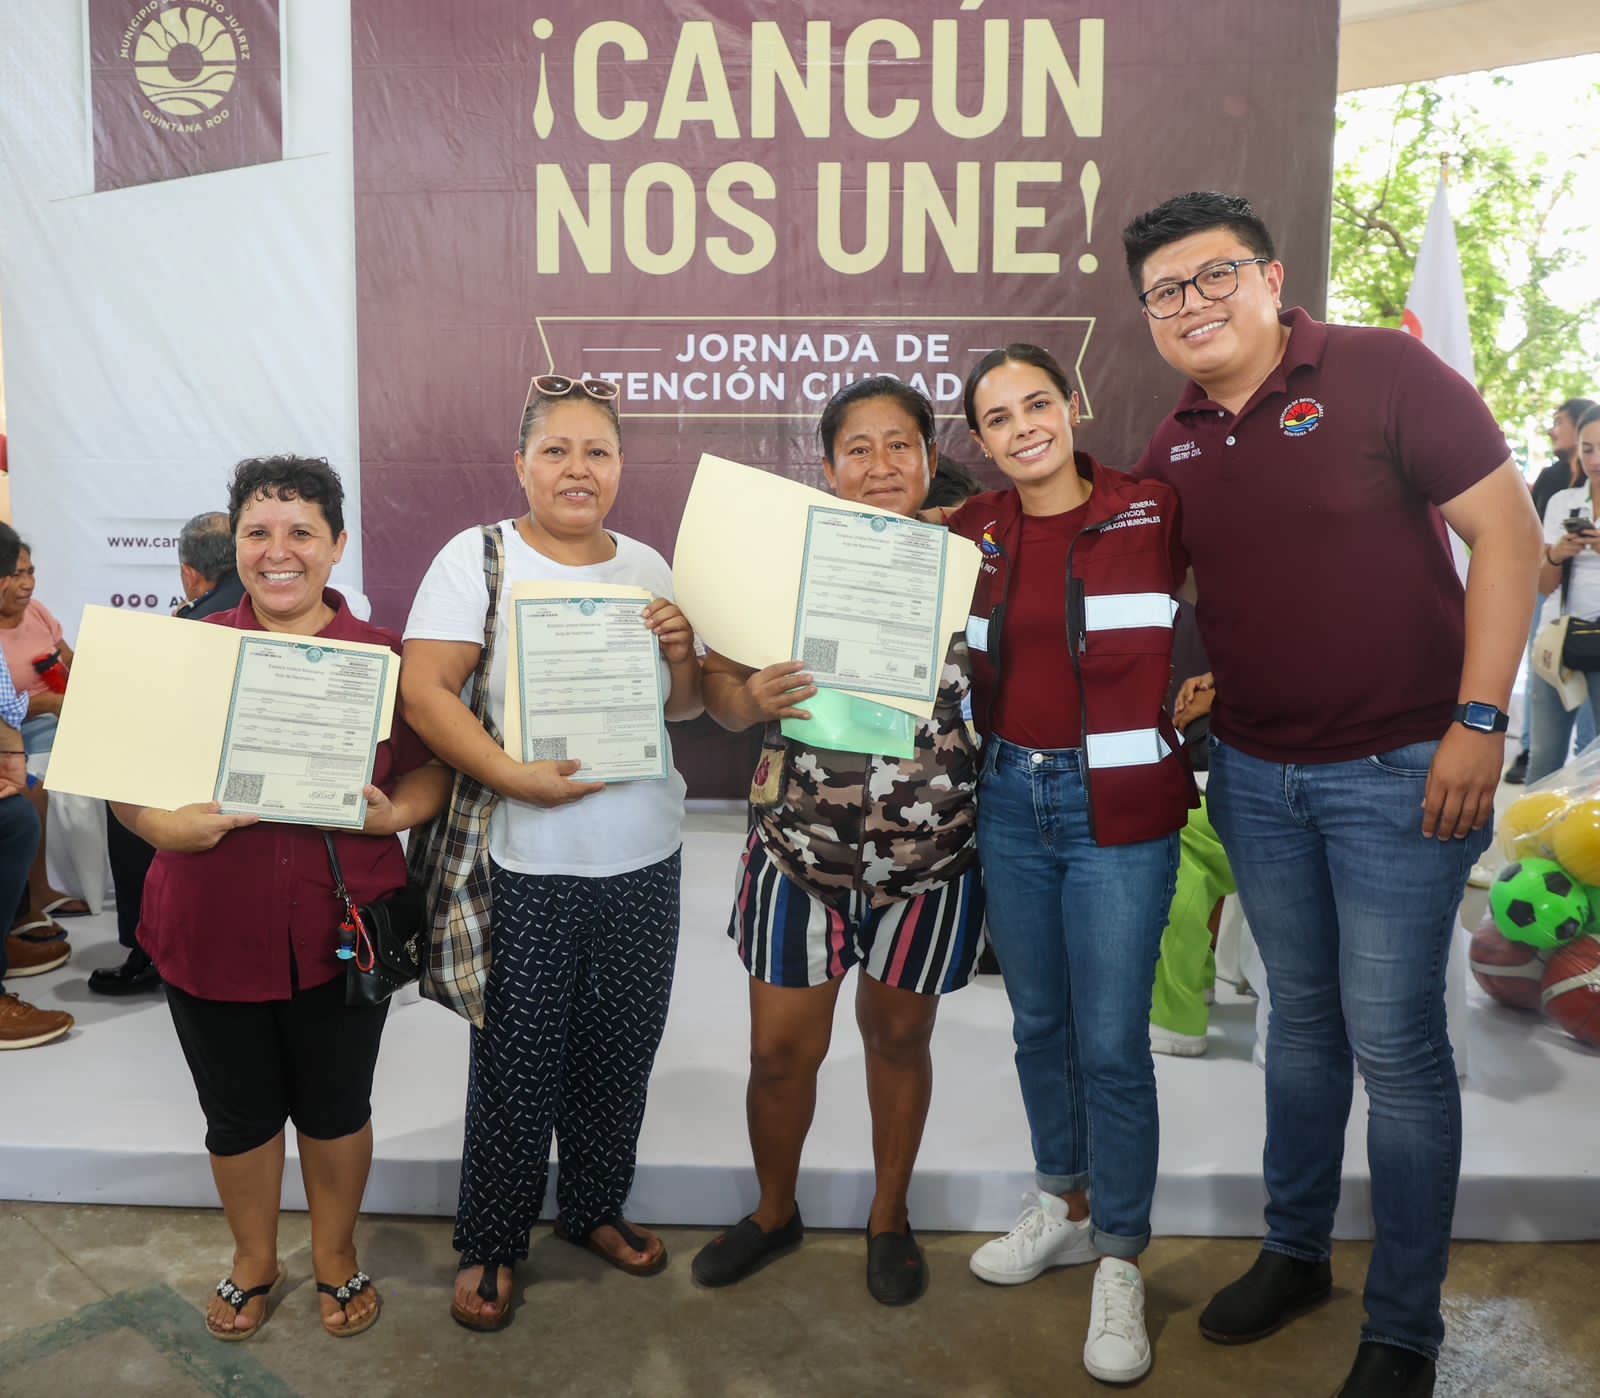 Con 14 ediciones de las Jornadas de Atención Ciudadana “¡Cancún nos une!” Ana Paty Peralta